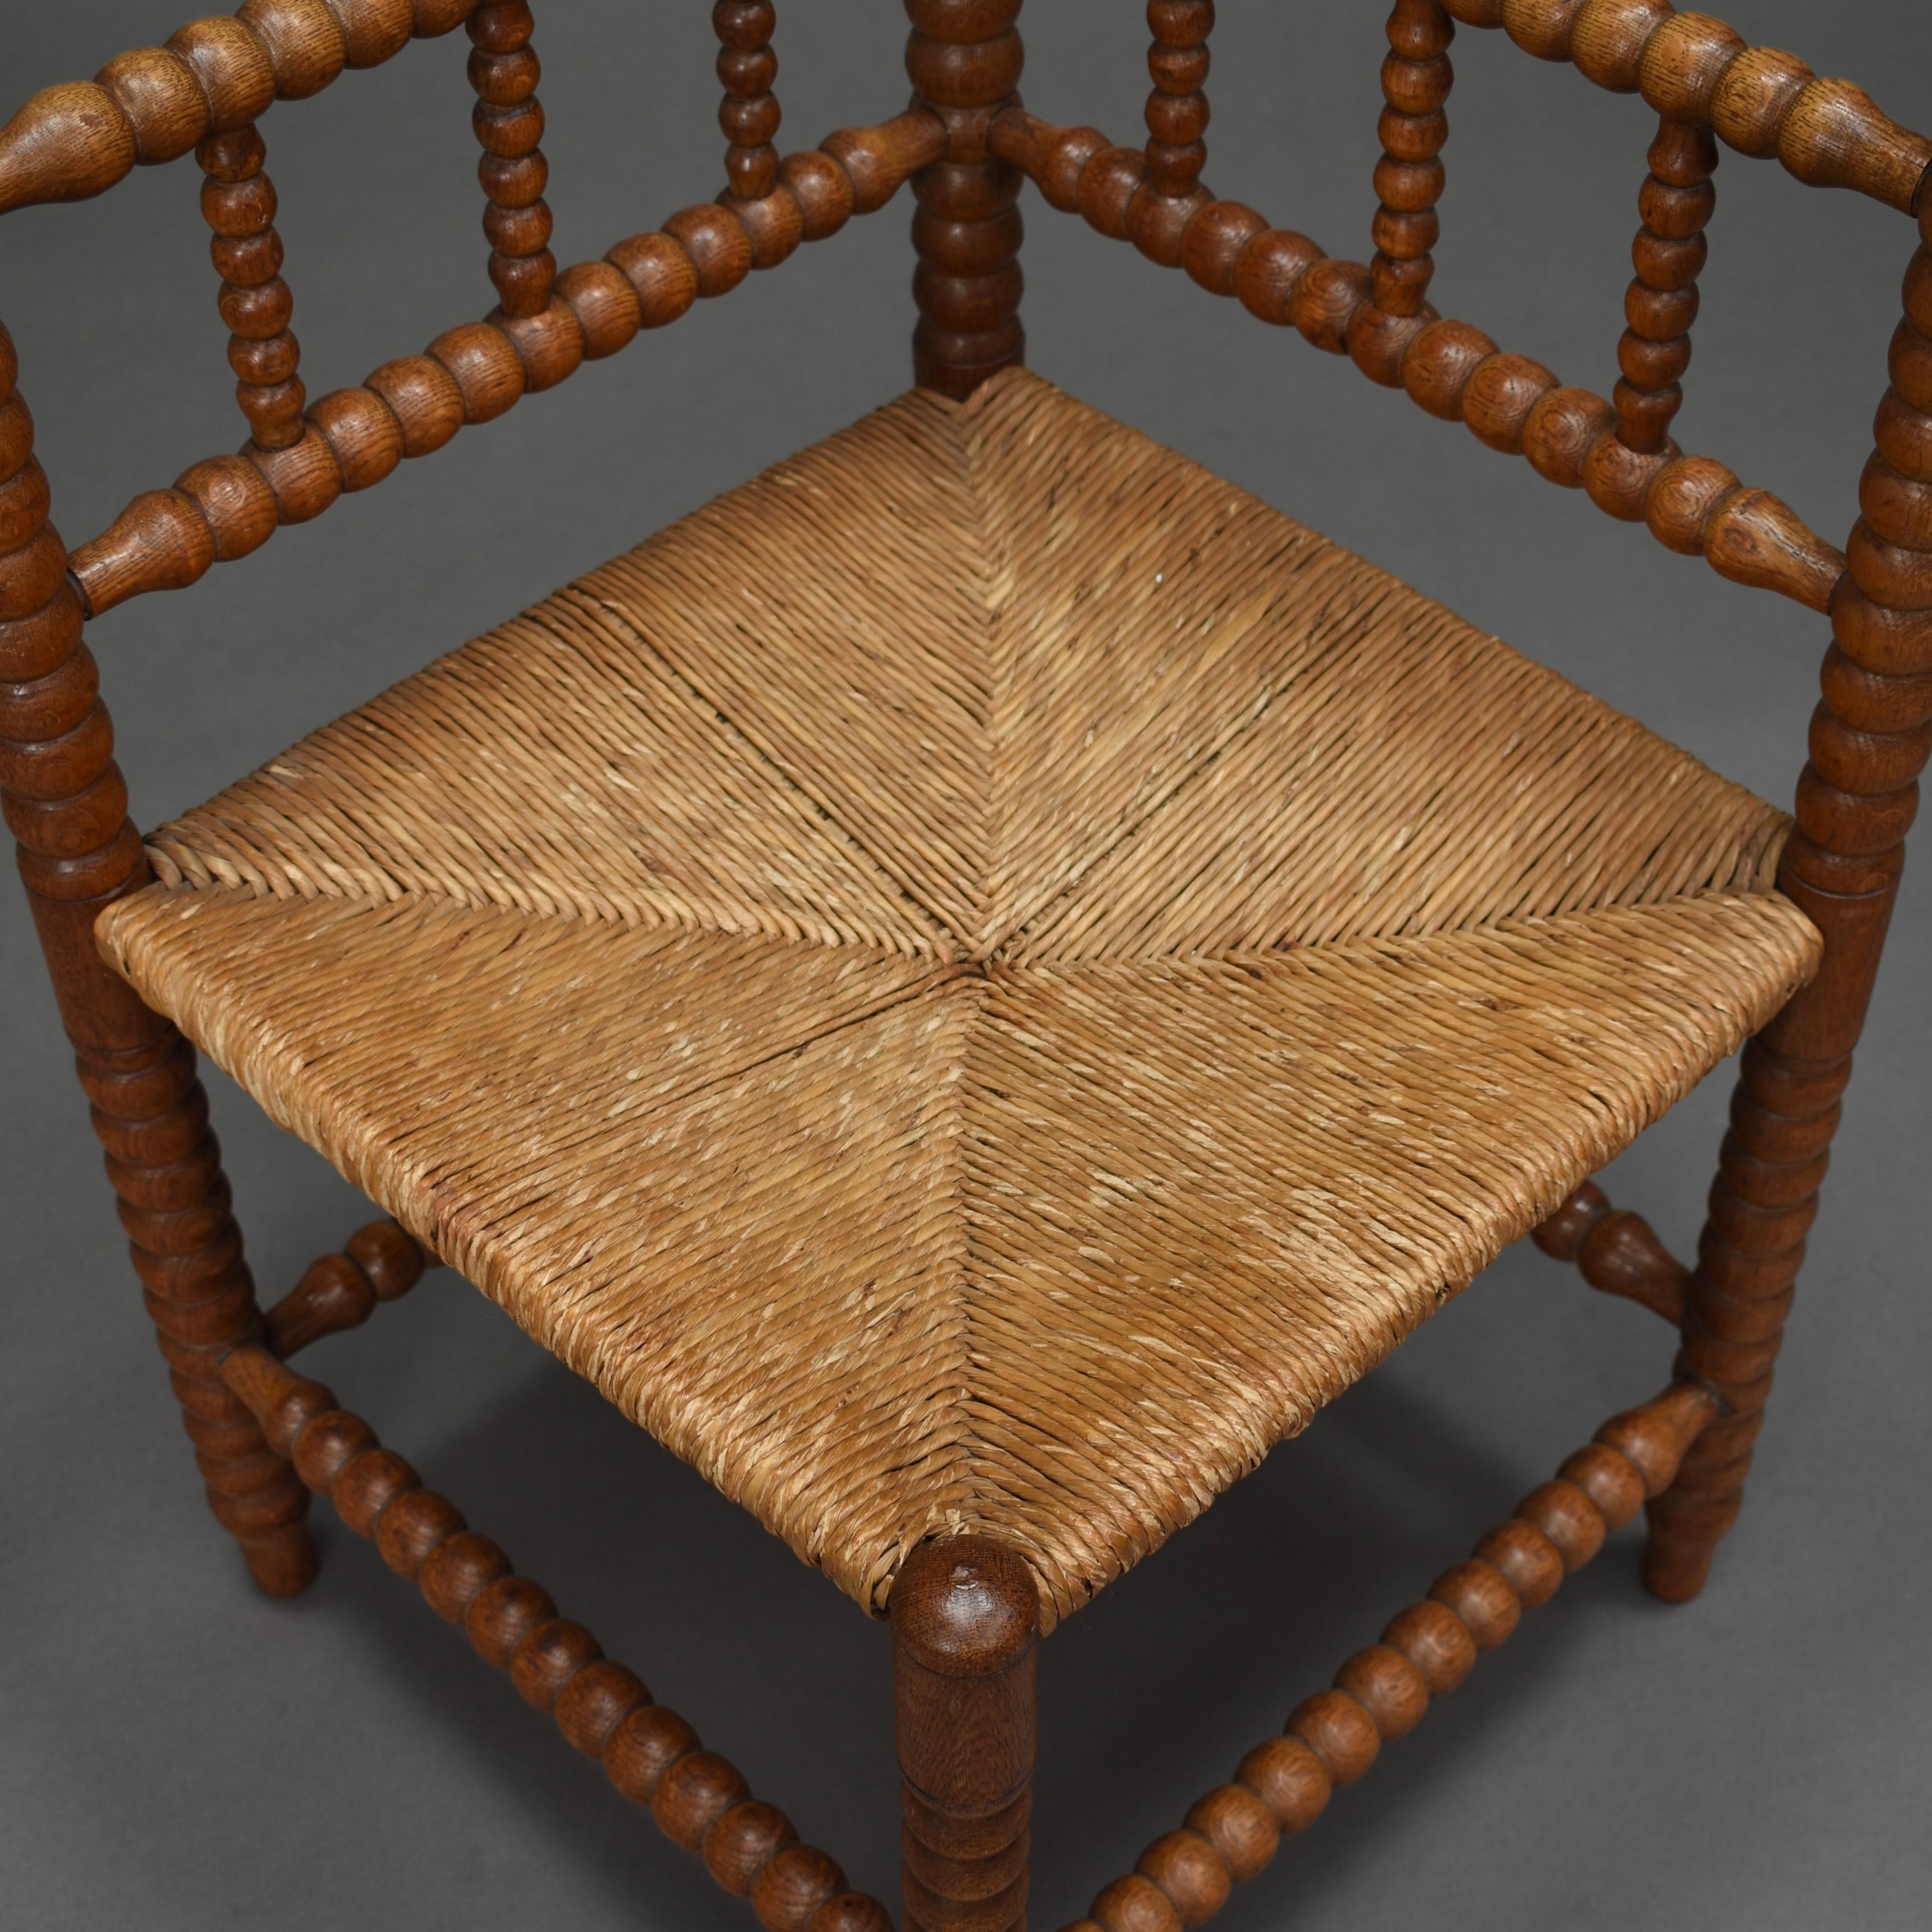 Wunderschöner französischer Eckstuhl aus massivem, gedrechseltem Eichenholz mit originalem Sitz aus geflochtenem Schilfrohr, um 1930-1940. In sehr gutem Zustand. Ein Bein ist natürlich leicht angewinkelt. Der Stuhl ist strukturell solide und der